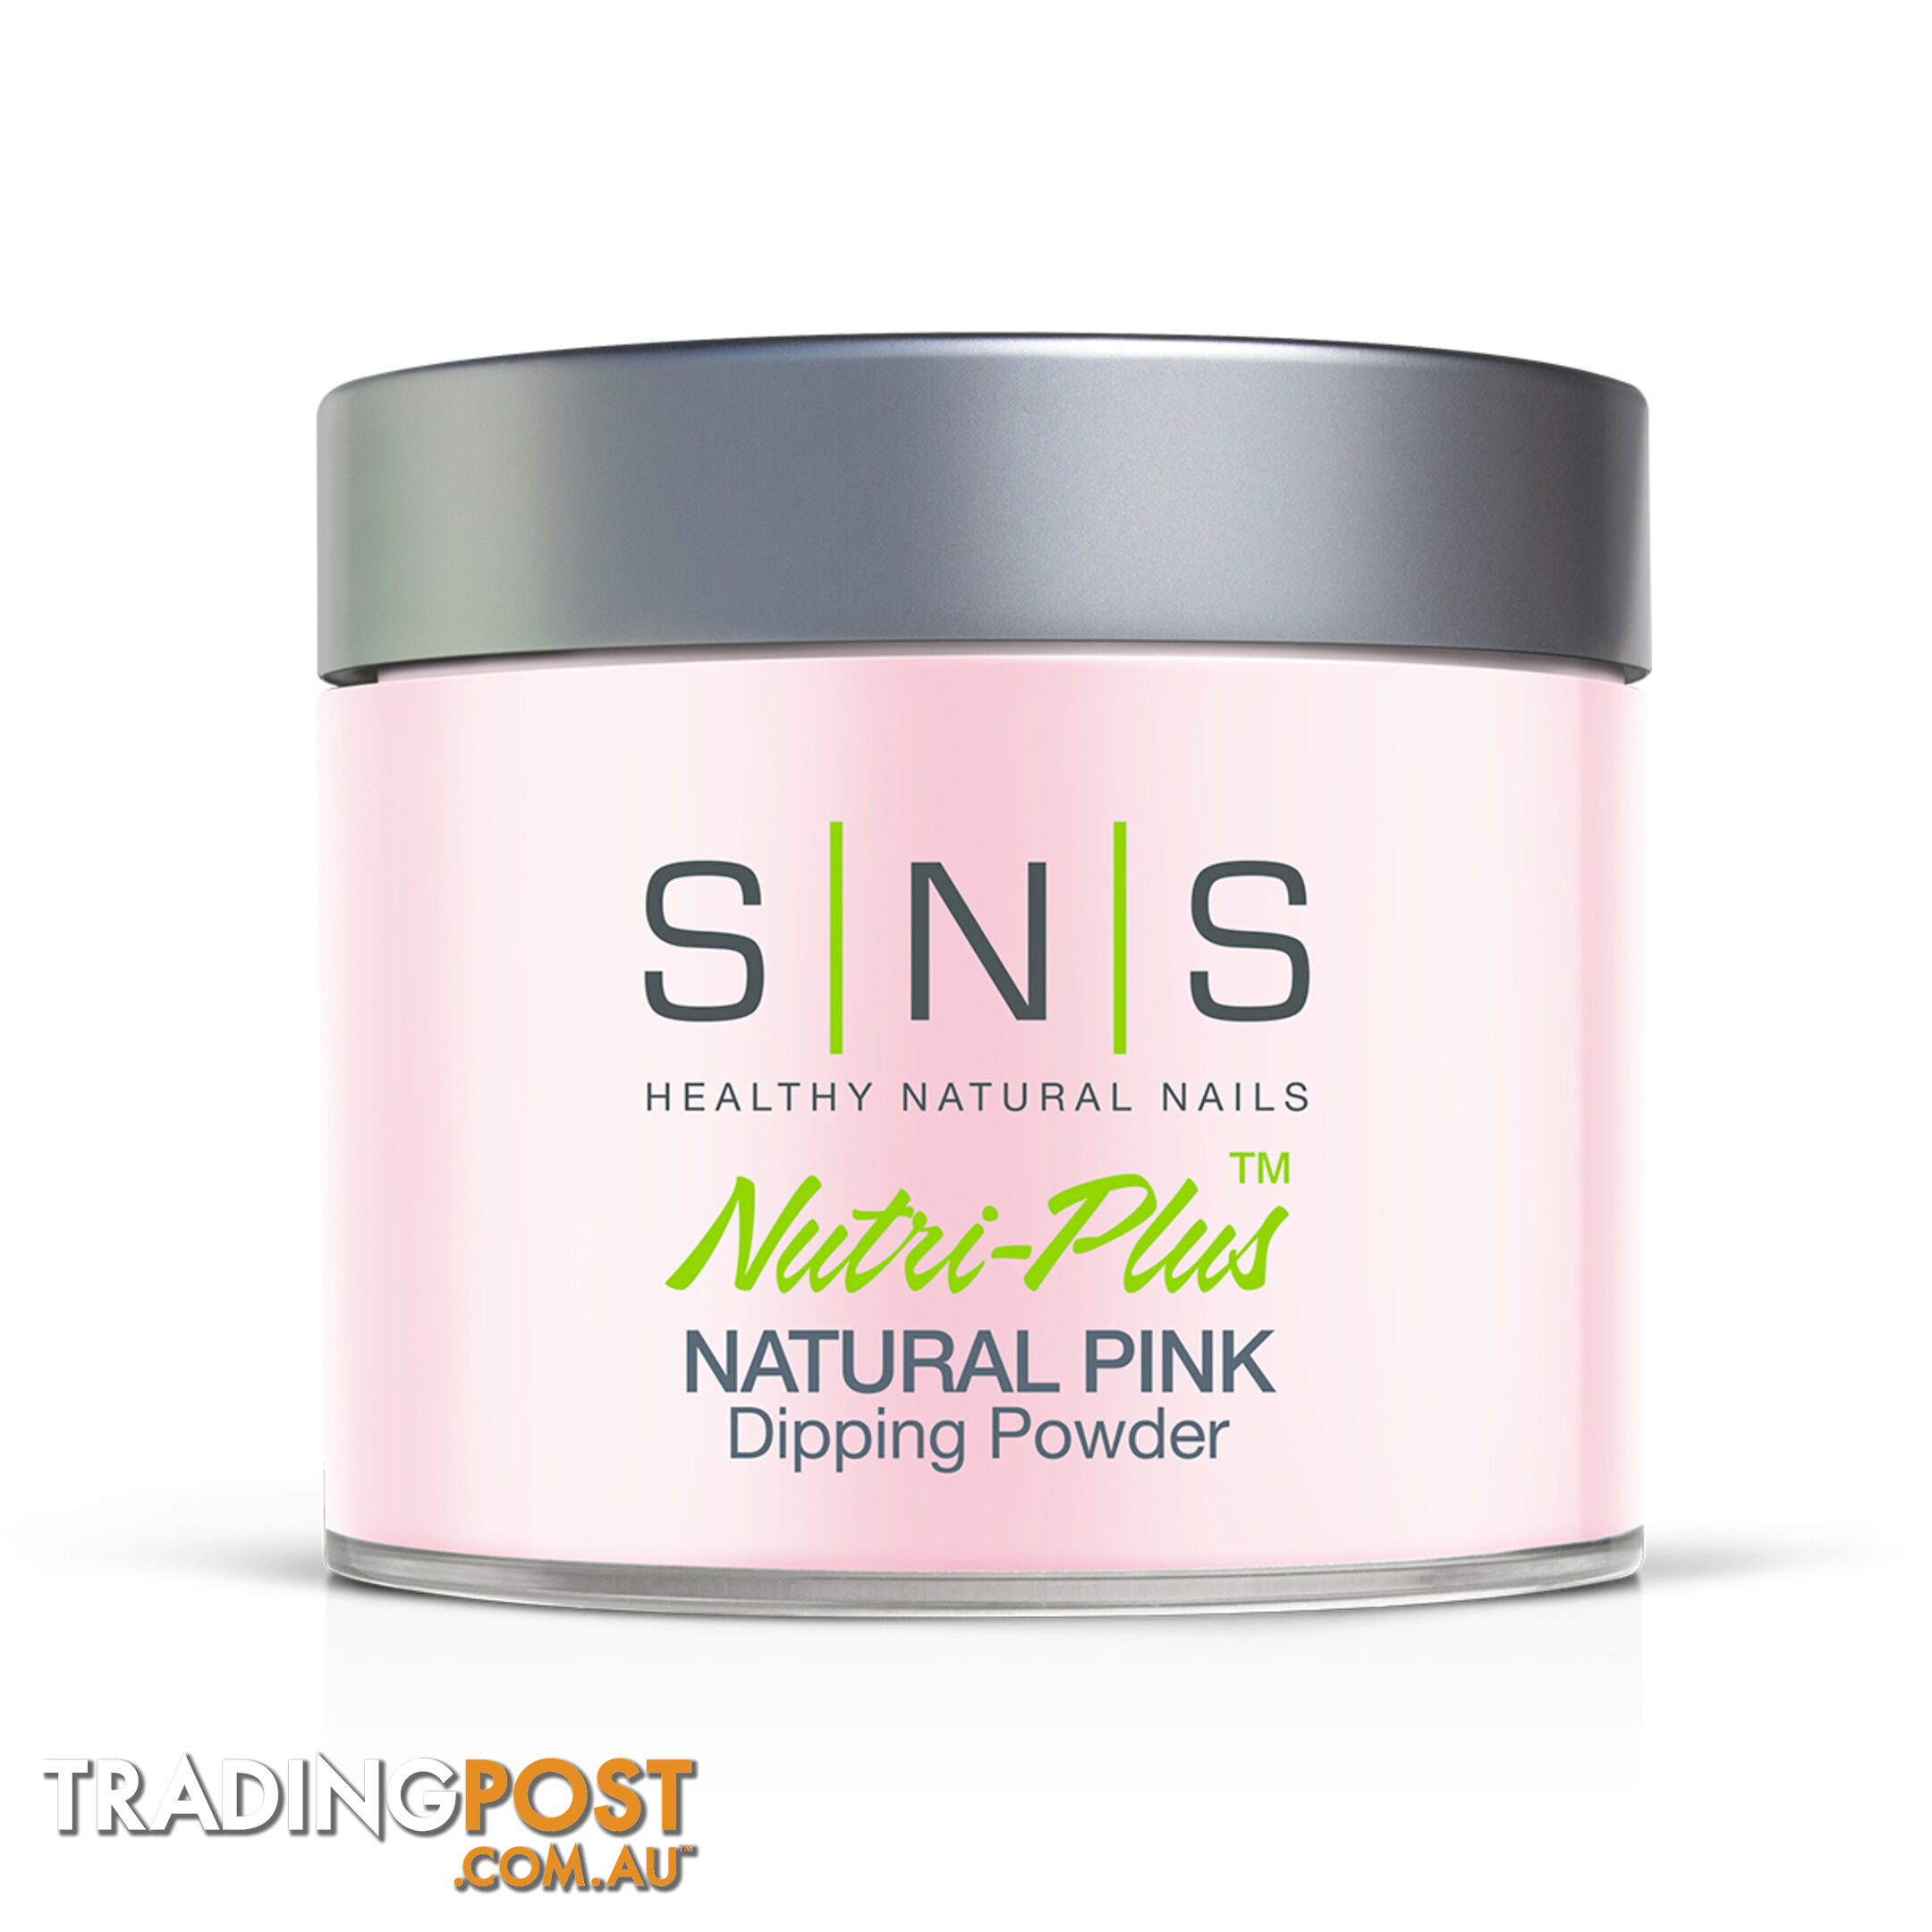 SNS Natural Pink (4oz) 113g - 635635735302